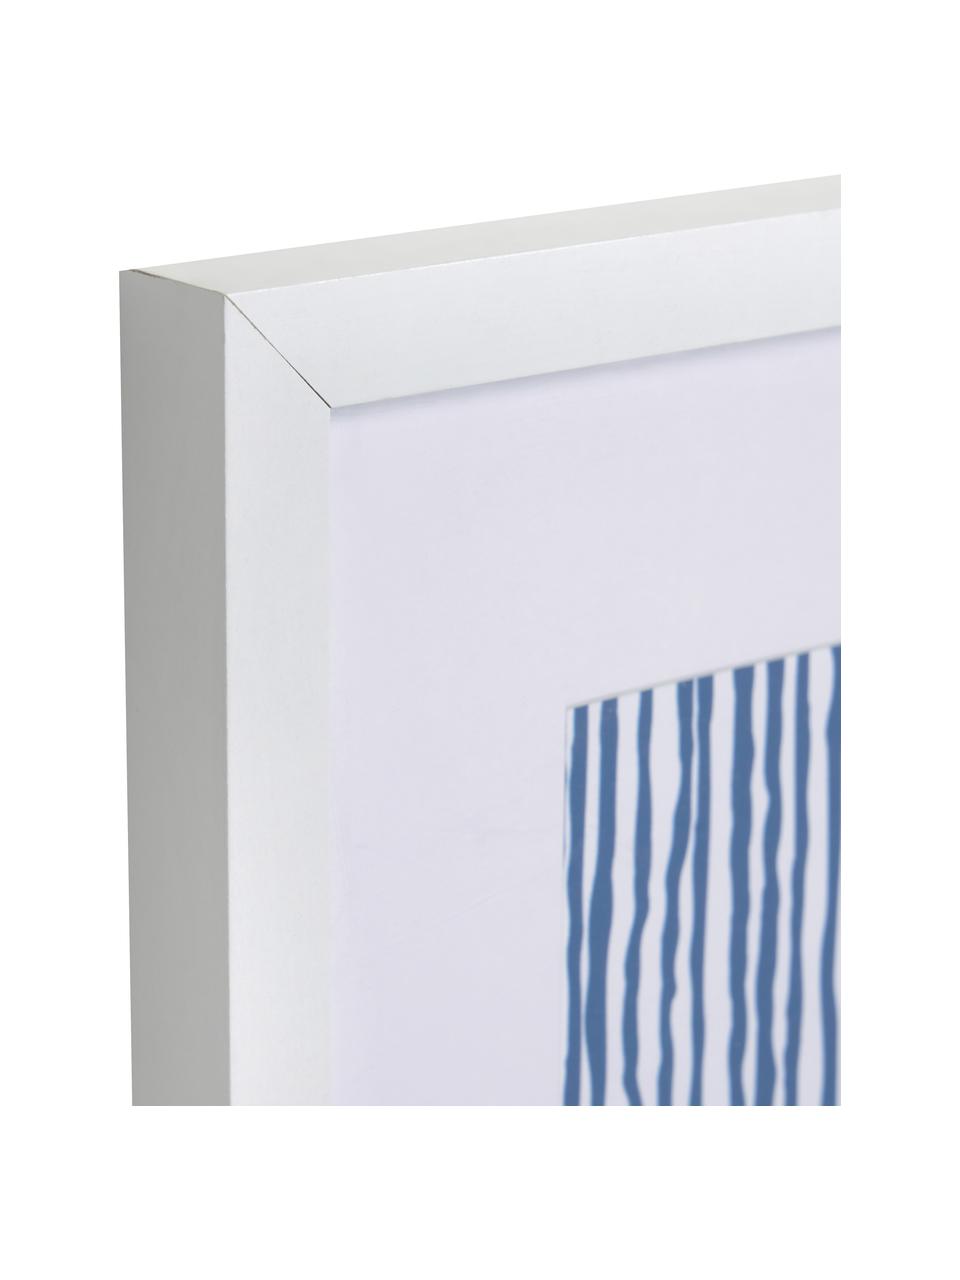 Oprawiony druk cyfrowy Kuma Stripes, Biały, kremowobiały, niebieski, S 30 x W 40 cm